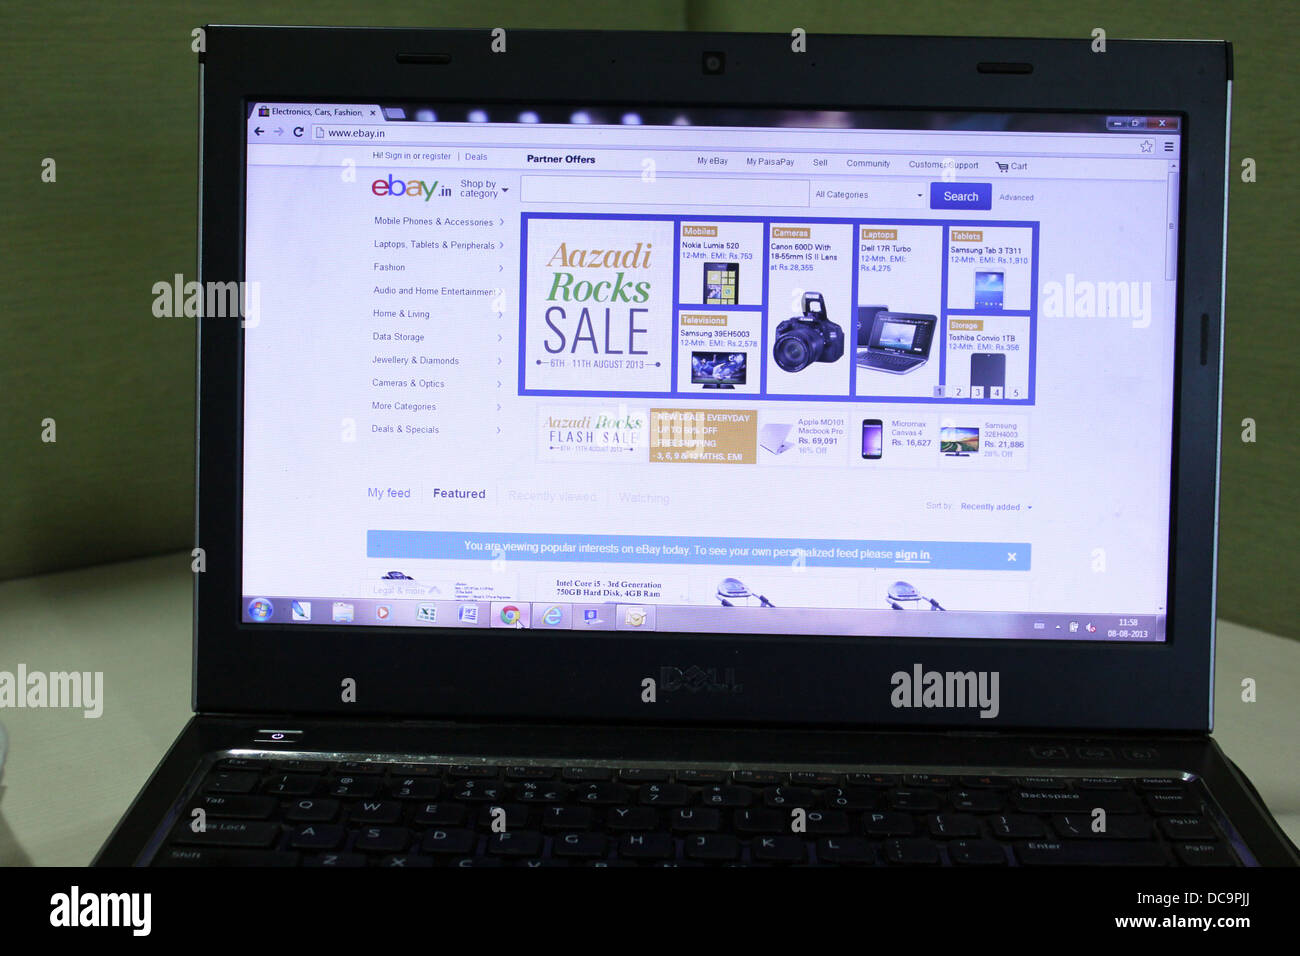 E bay india on a laptop screen Stock Photo